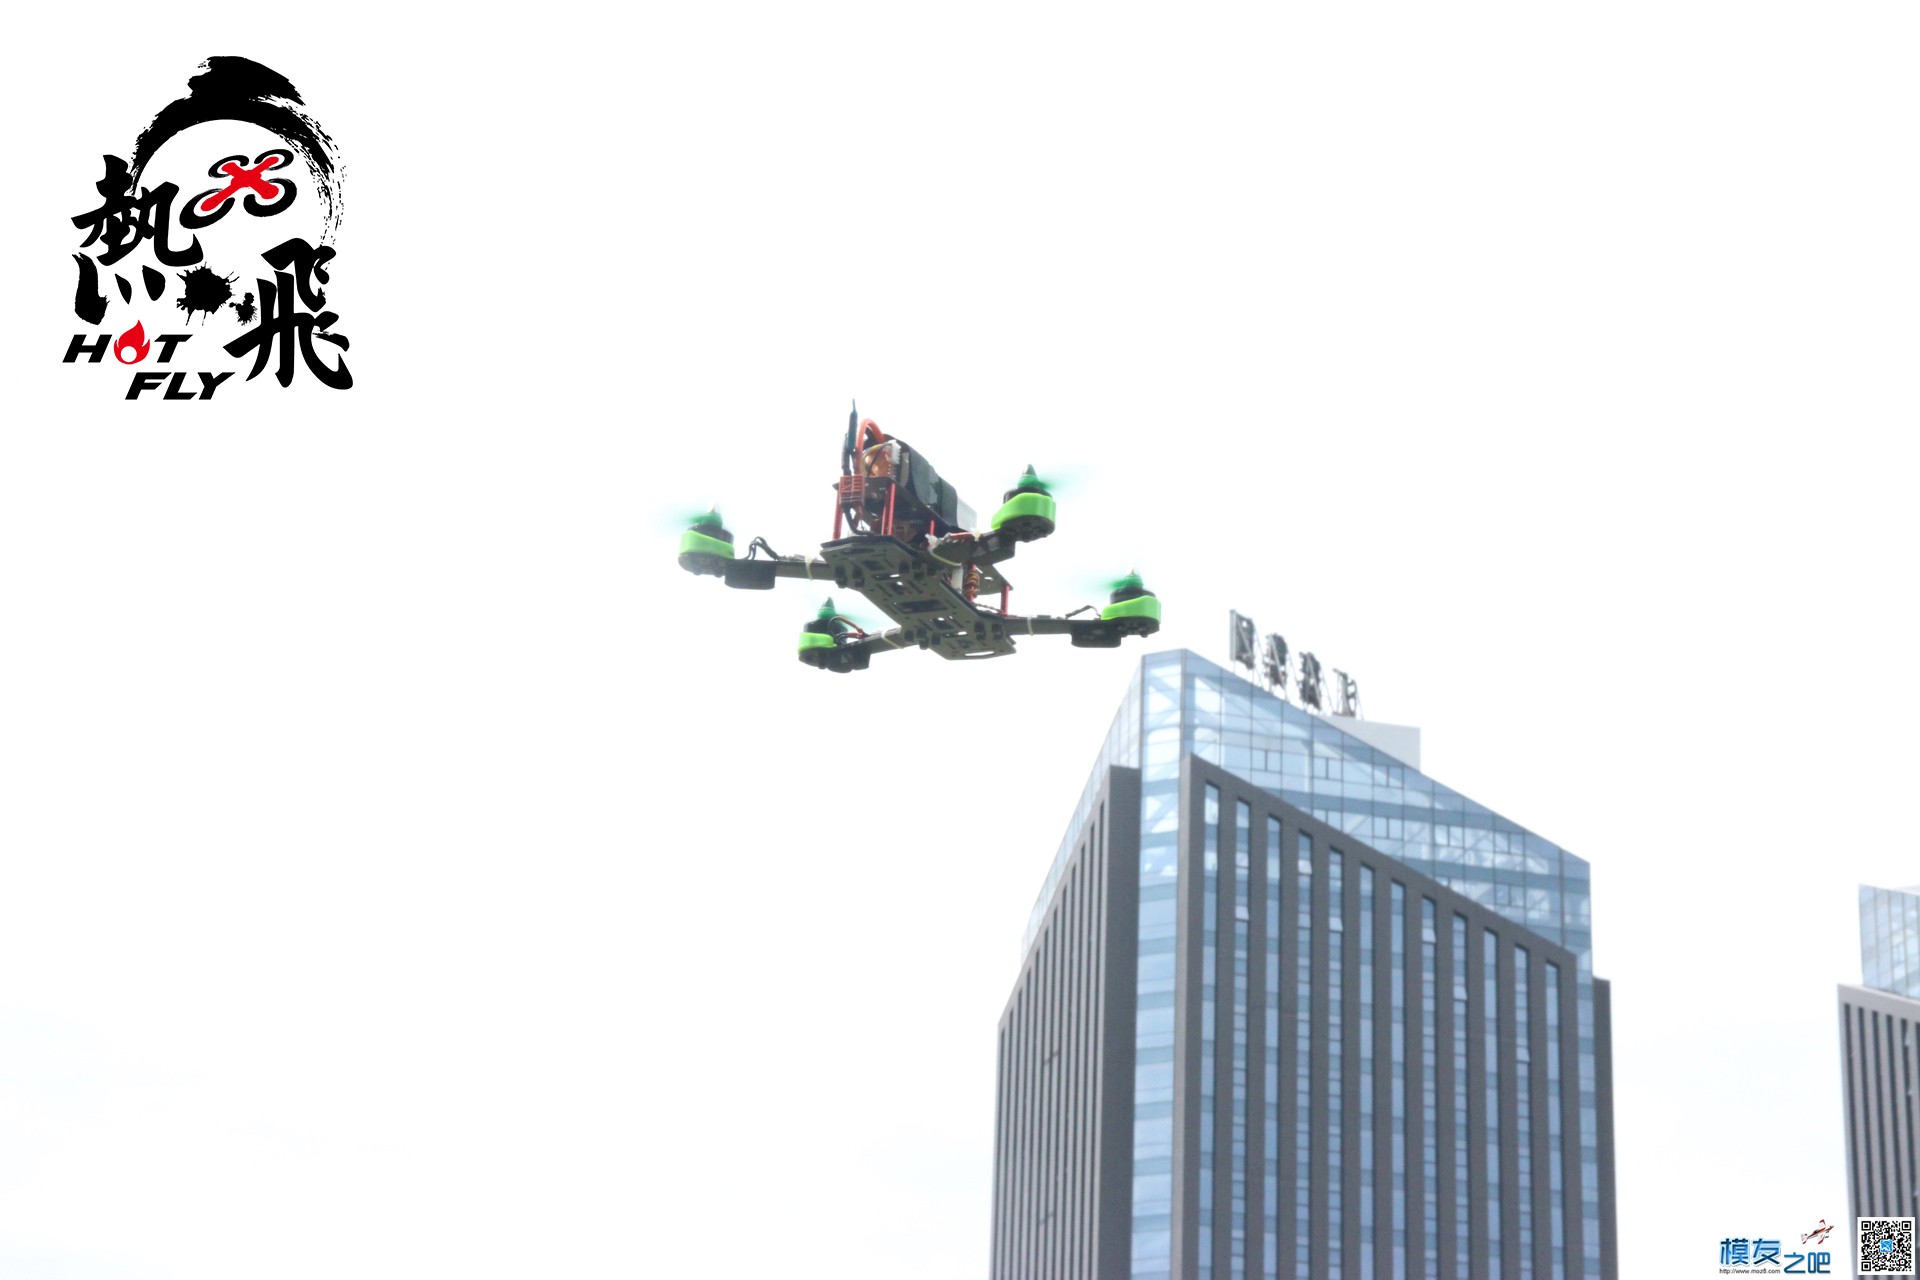 热飞视频+图片|7.9无人机总动员现场曝光各种最新机型 无人机 作者:杭州大碗 3967 